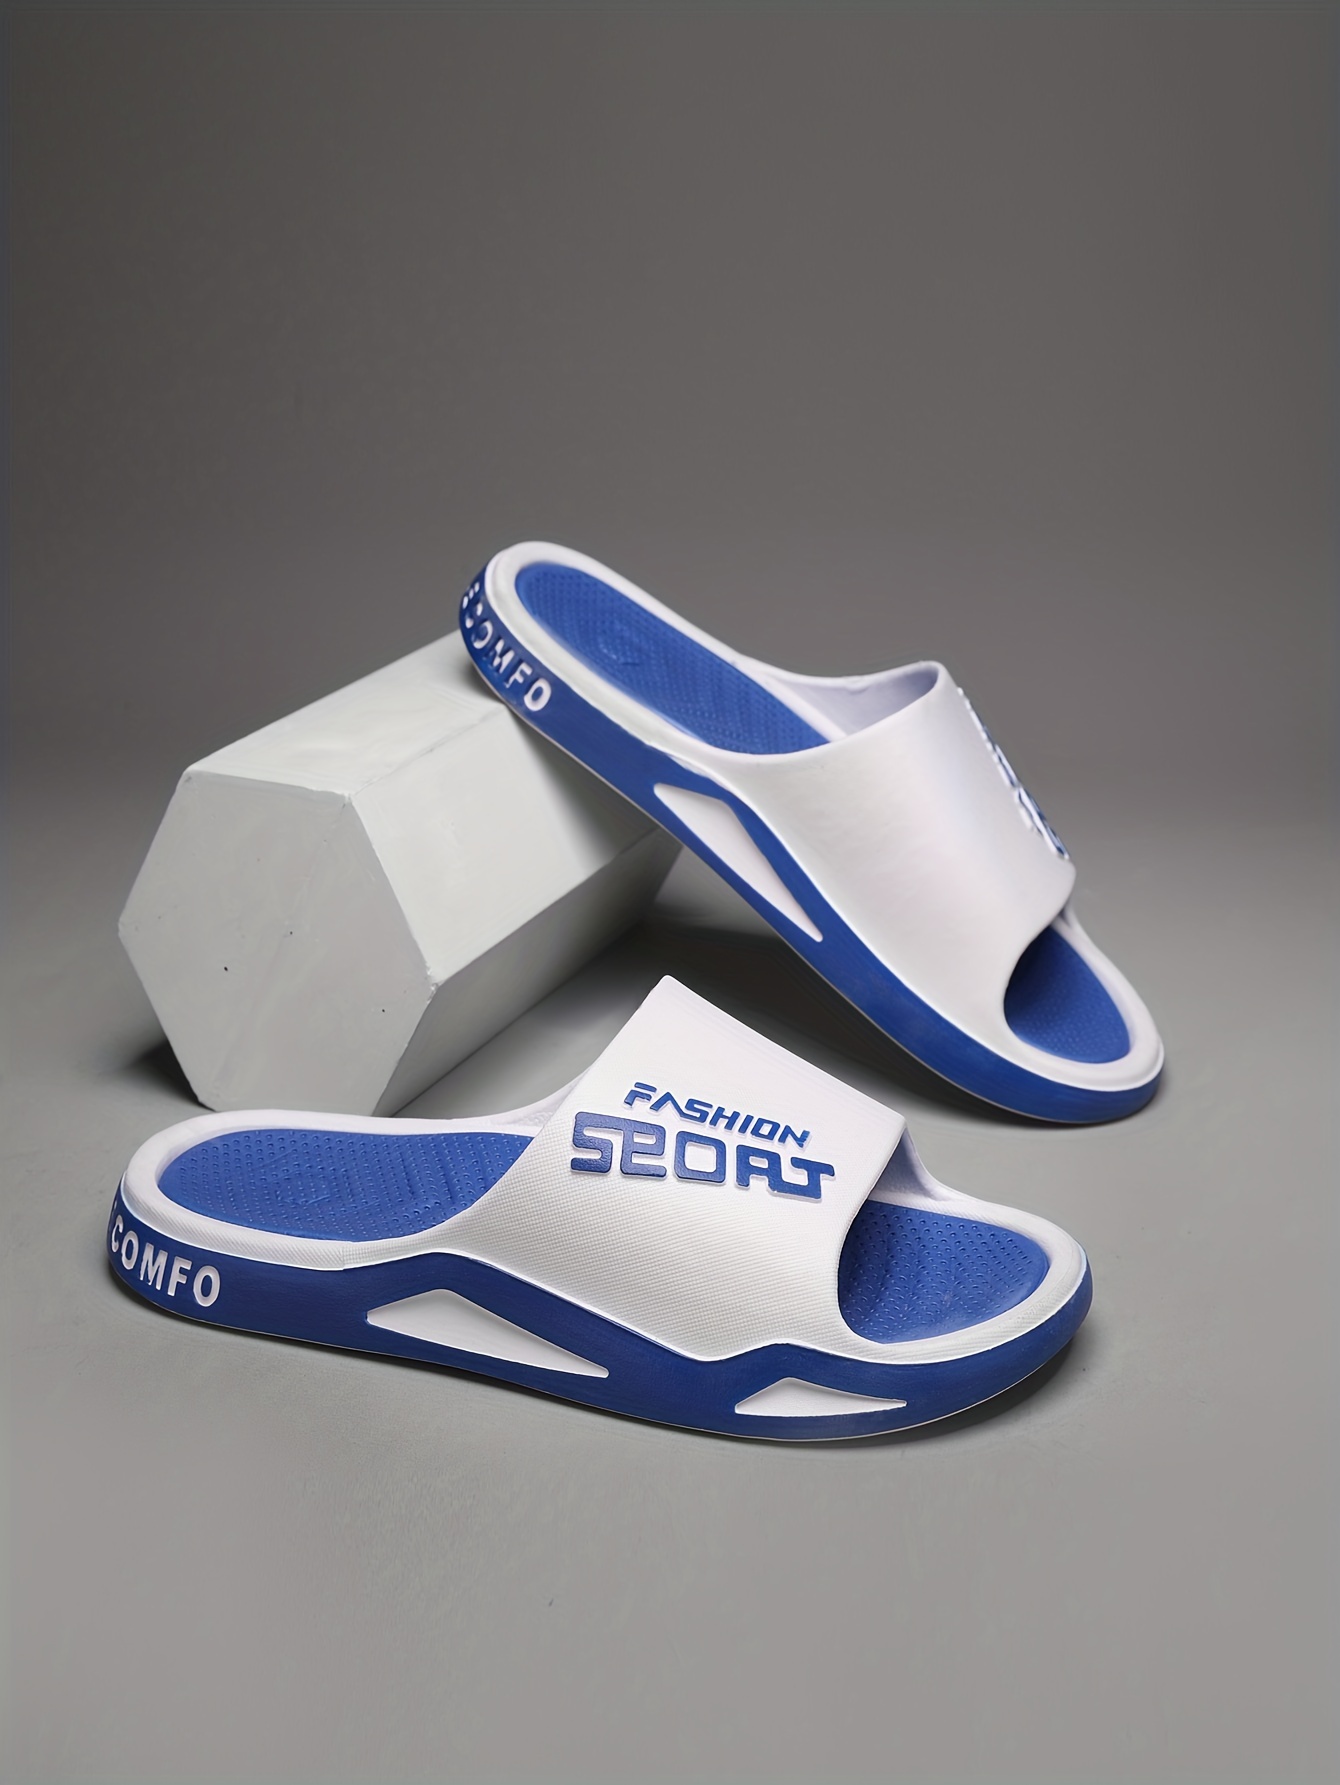 REFOAM White & Blue Rubber Slip On Casual Slippers/Flip-Flops For Men –  Refoam